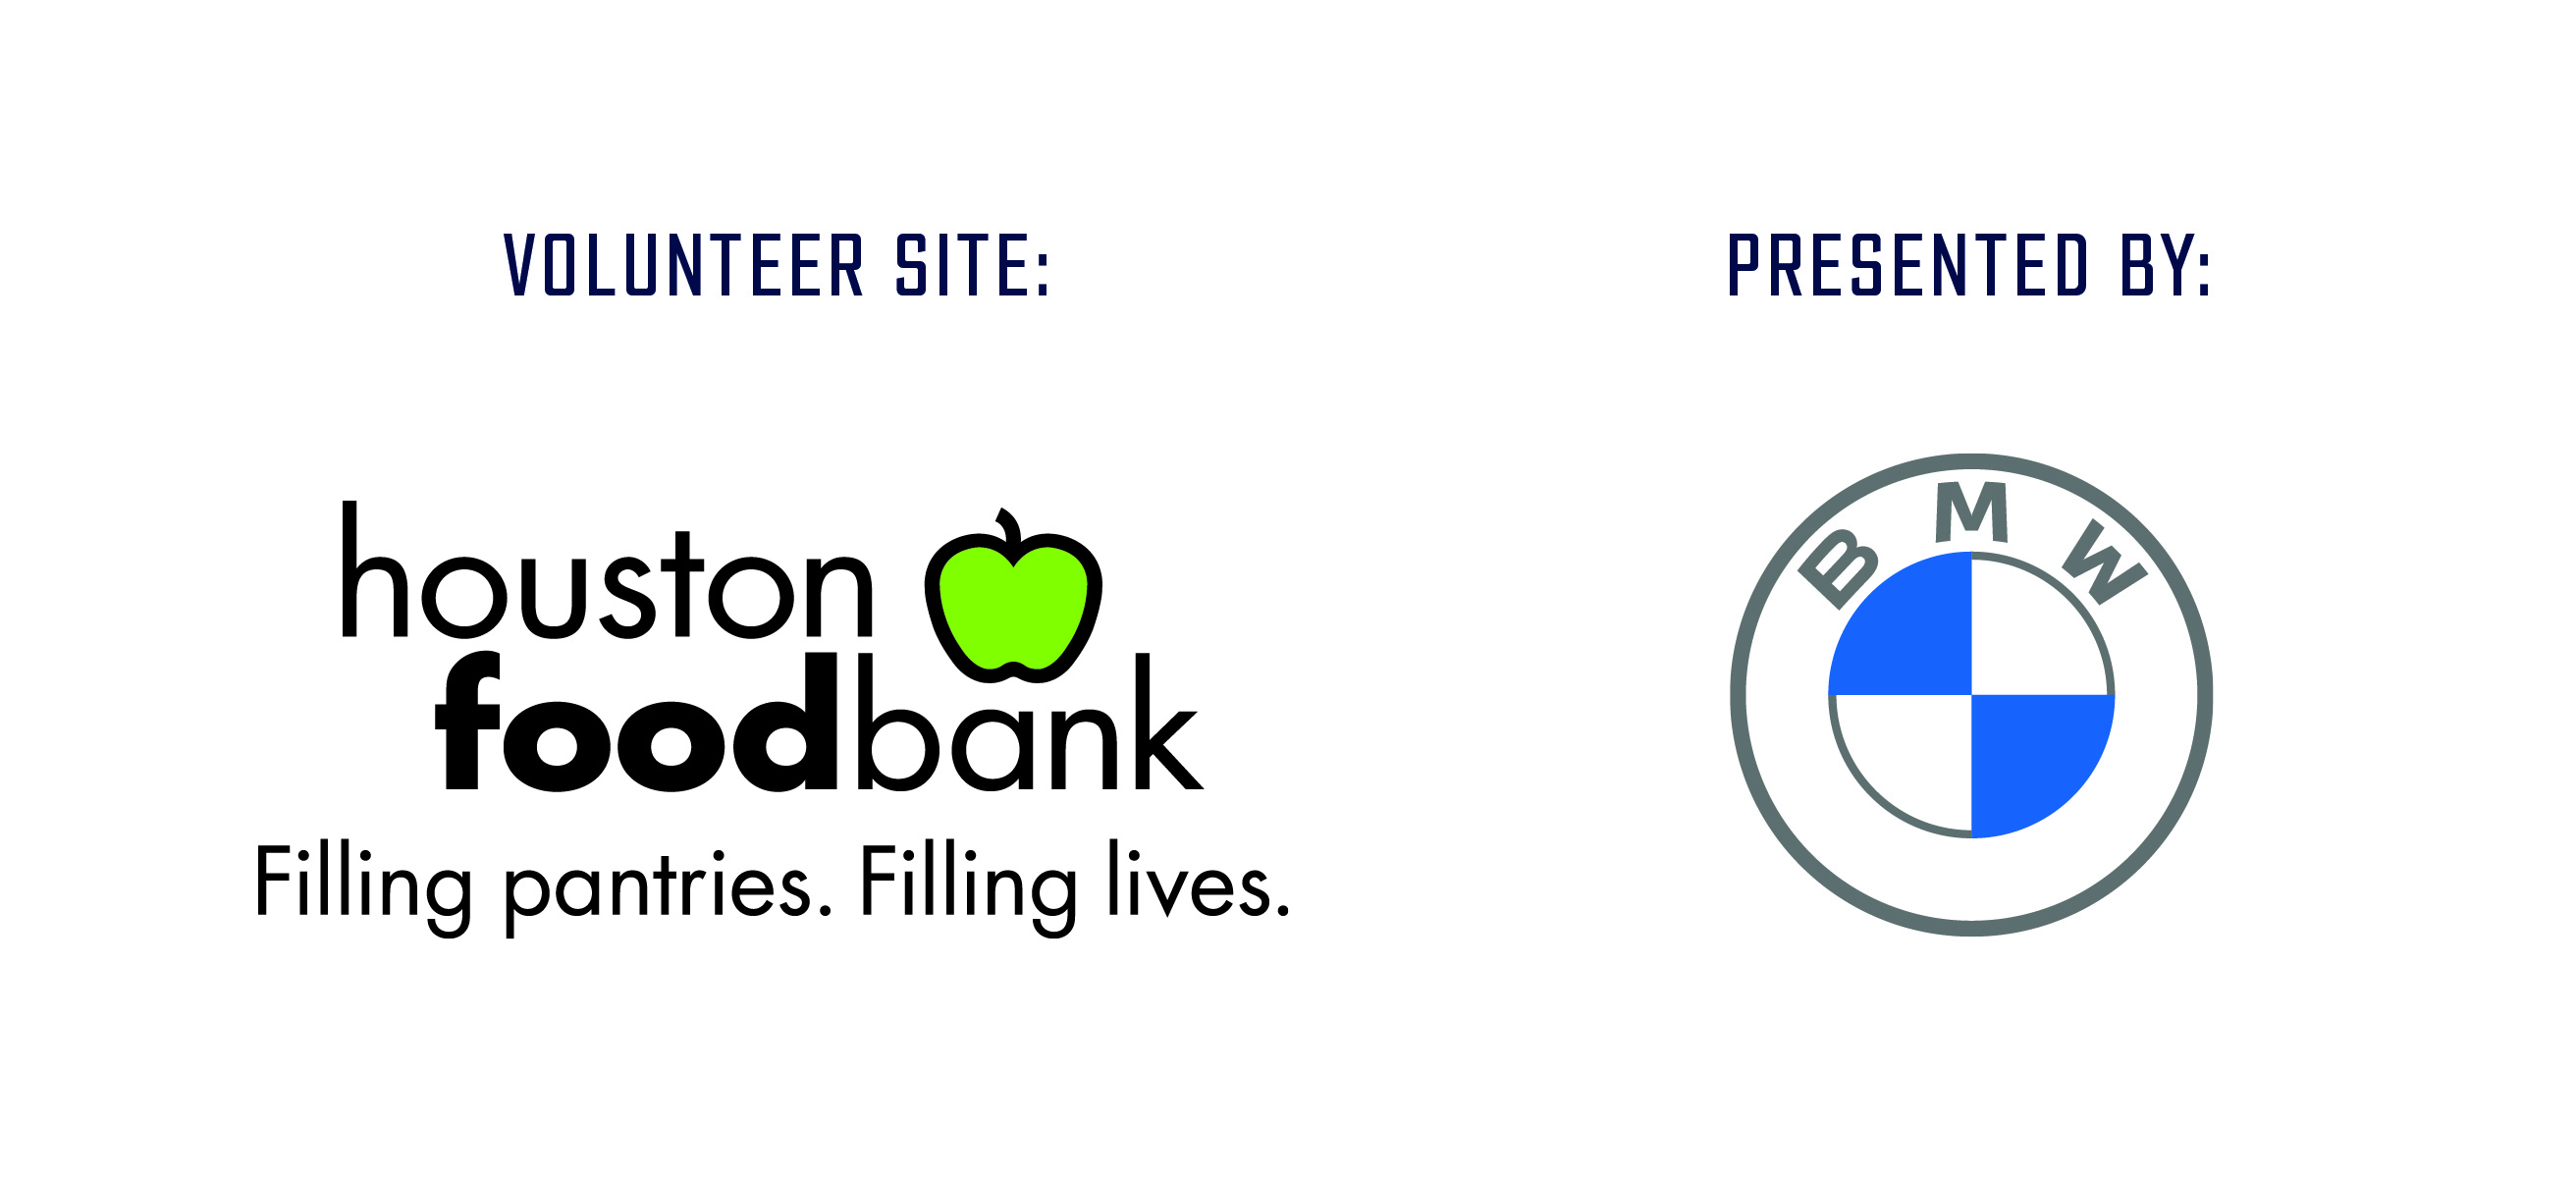 Volunteer site: Houston Food Bank presented by BMW